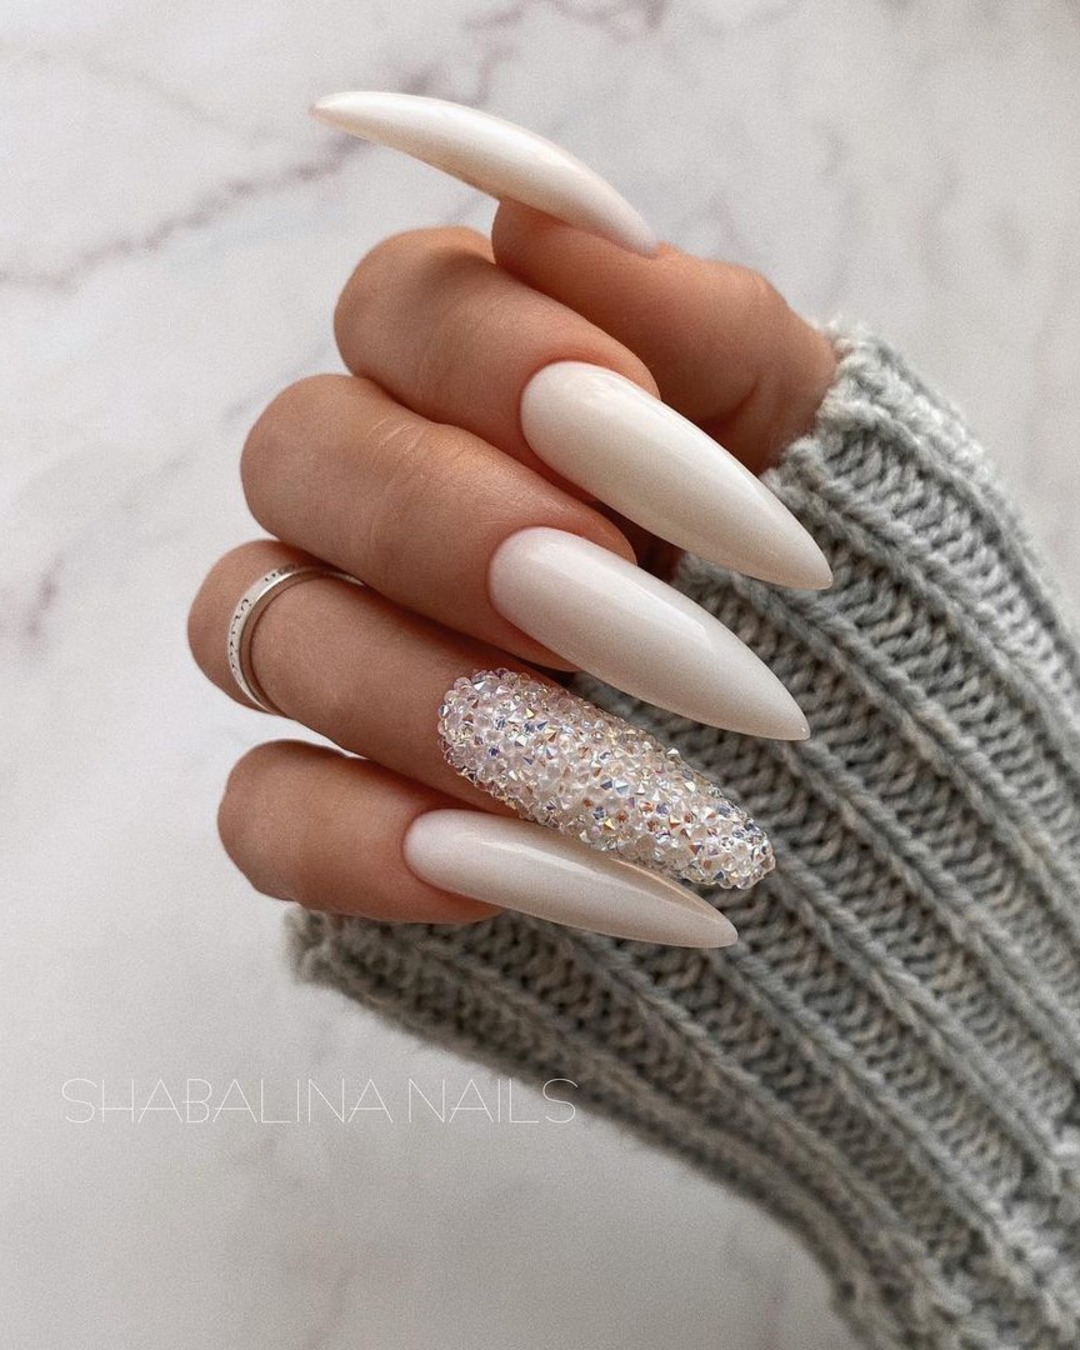 stiletto wedding nails white